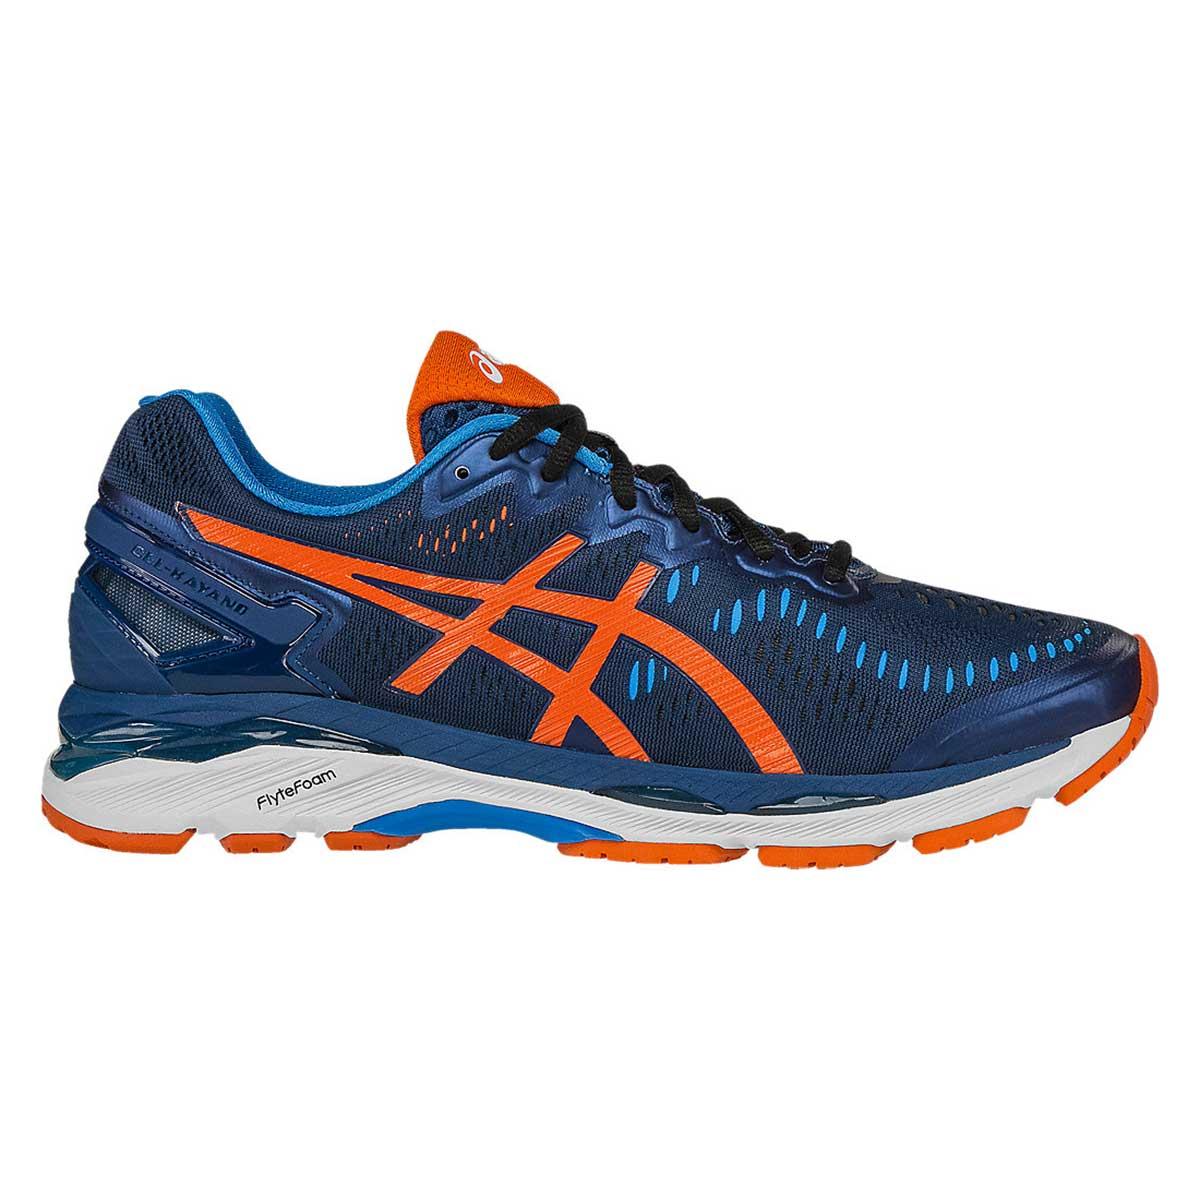 Buy Asics Gel-Kayano 23 Running Shoes (Poseidon/Orange) Online